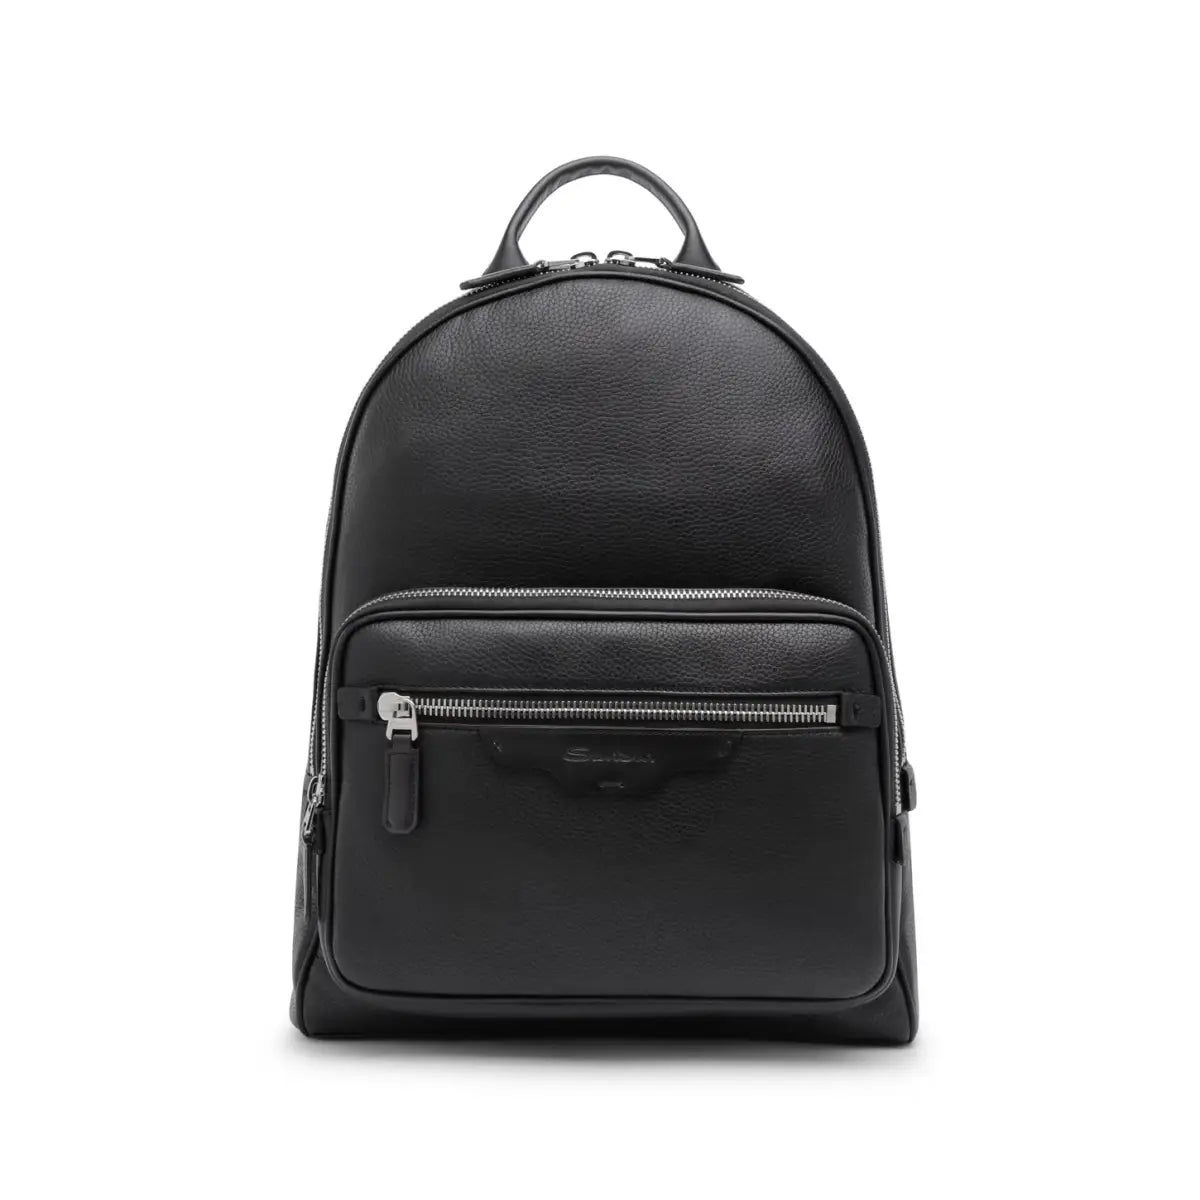 black leather backpack santoni man.